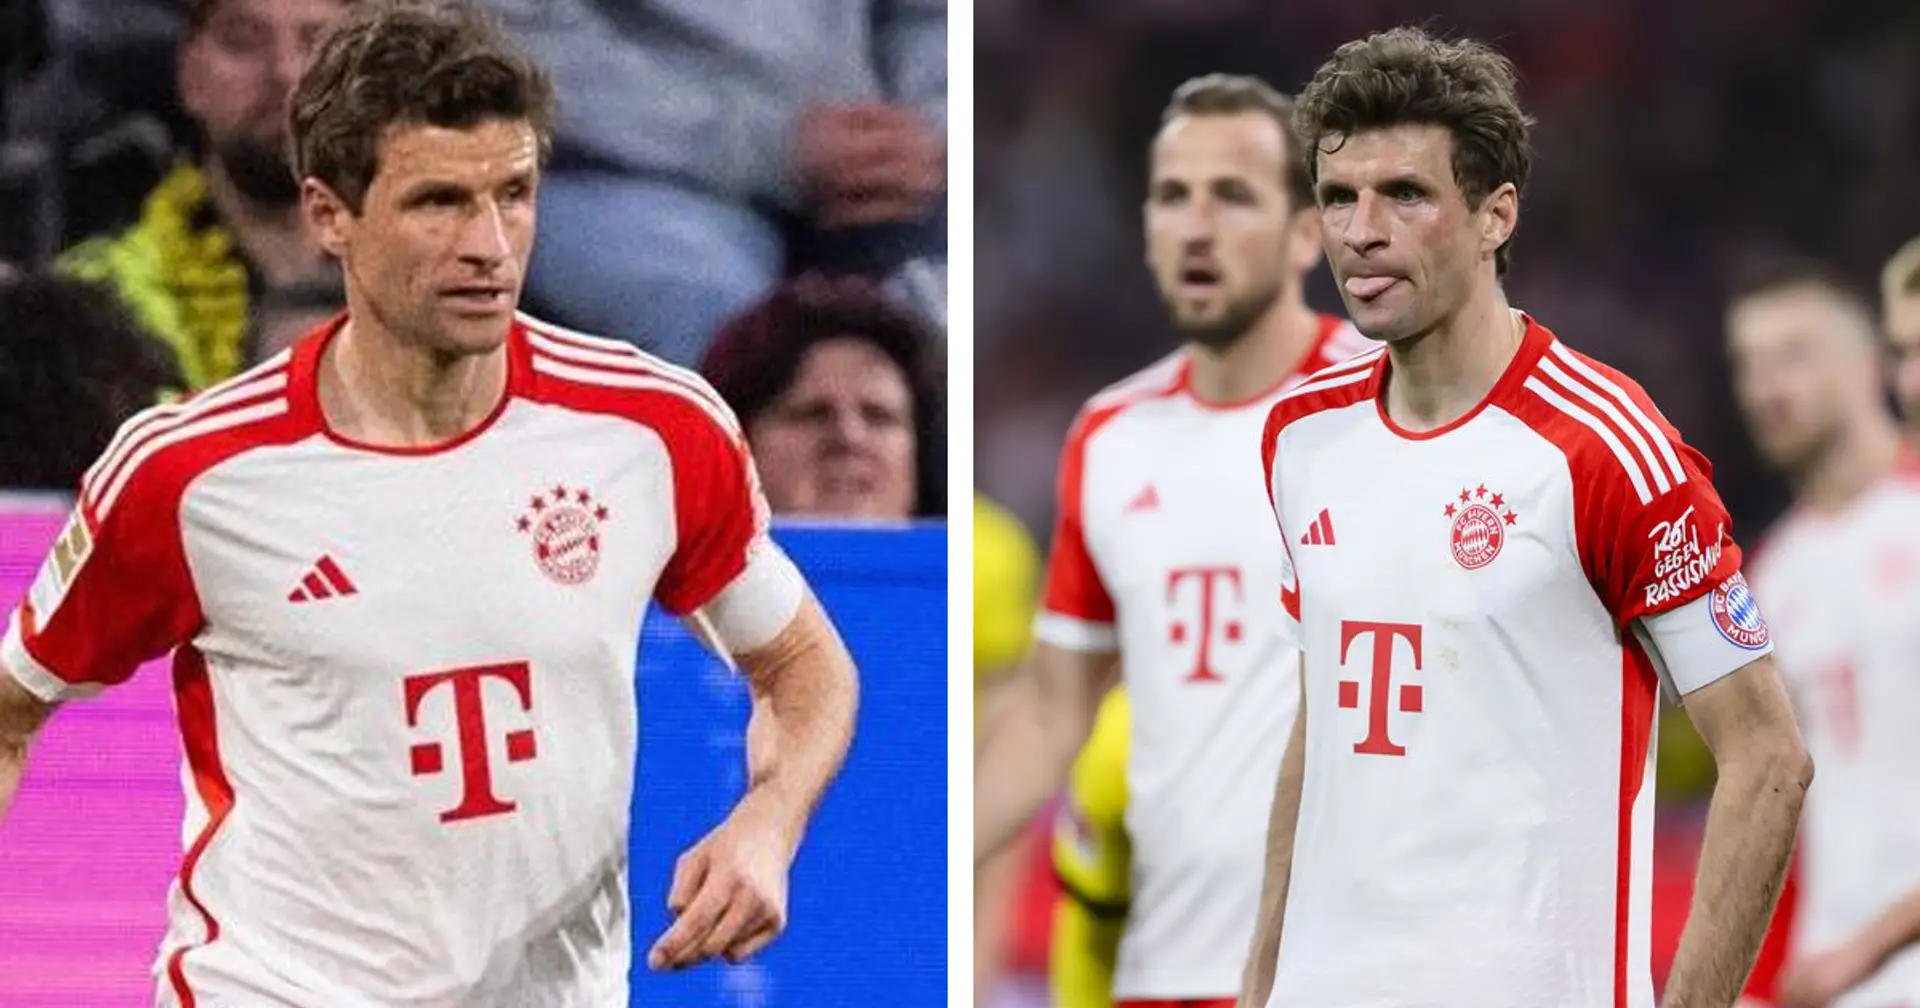 Thomas Müller ist der einzige Spieler, der auf die Niederlage gegen den BVB auf Instagram reagiert